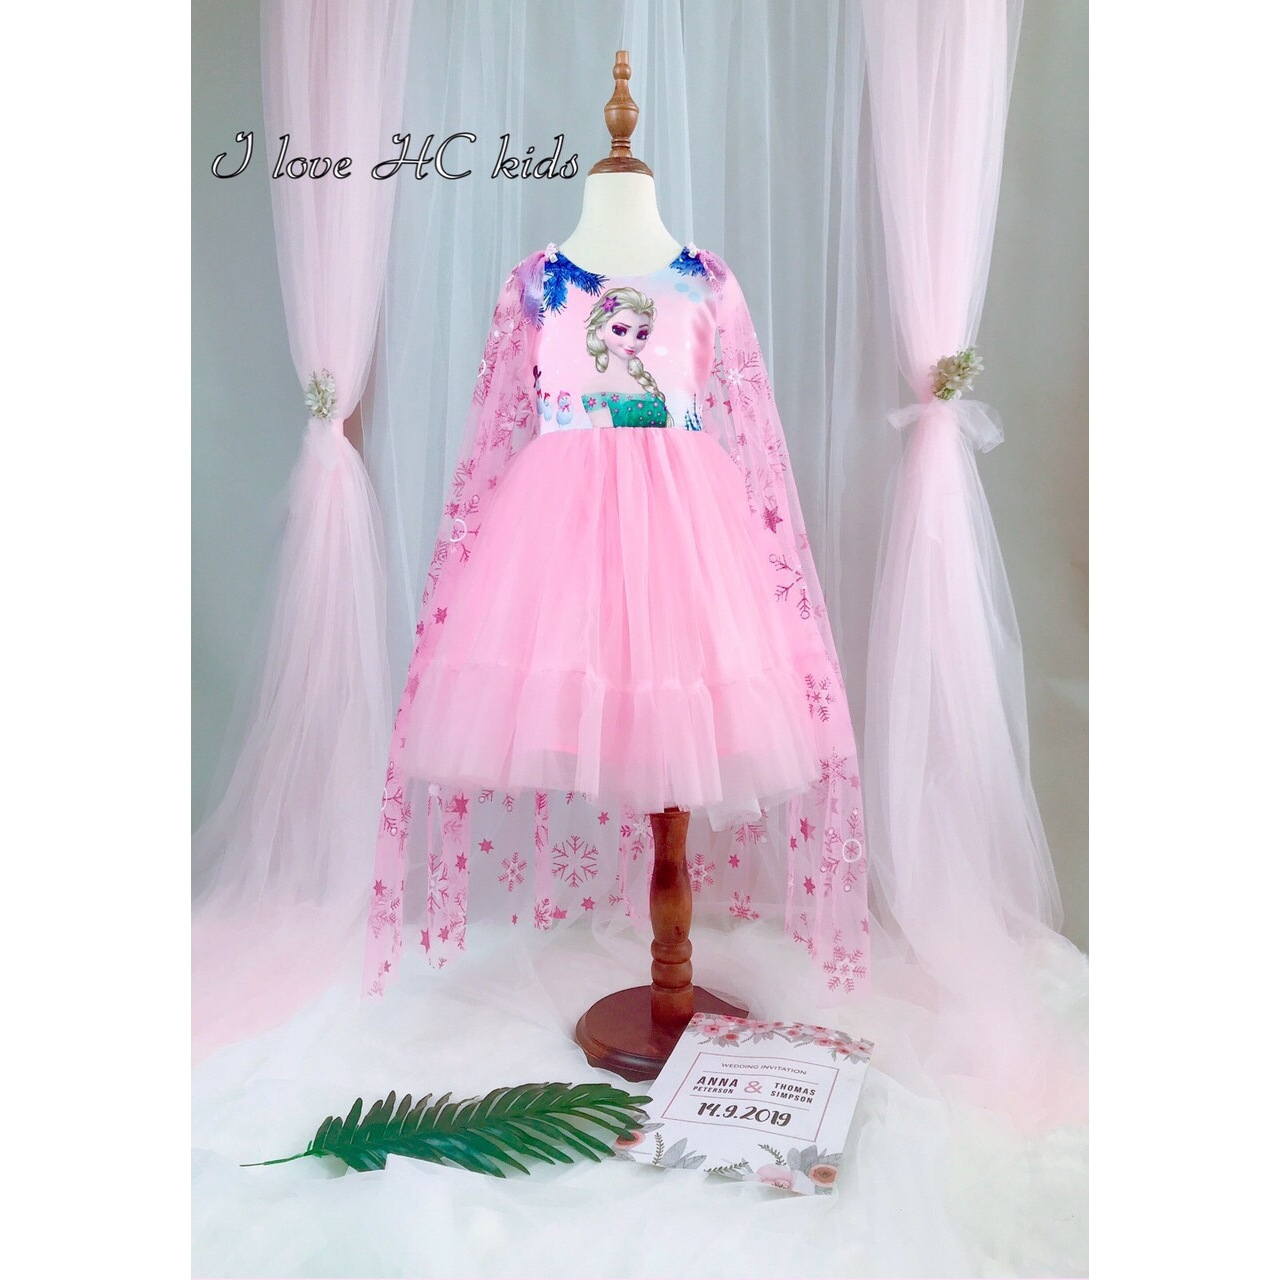 TOP các shop bán váy đầm công chúa cho bé ở Hà Nội - Kênh Z